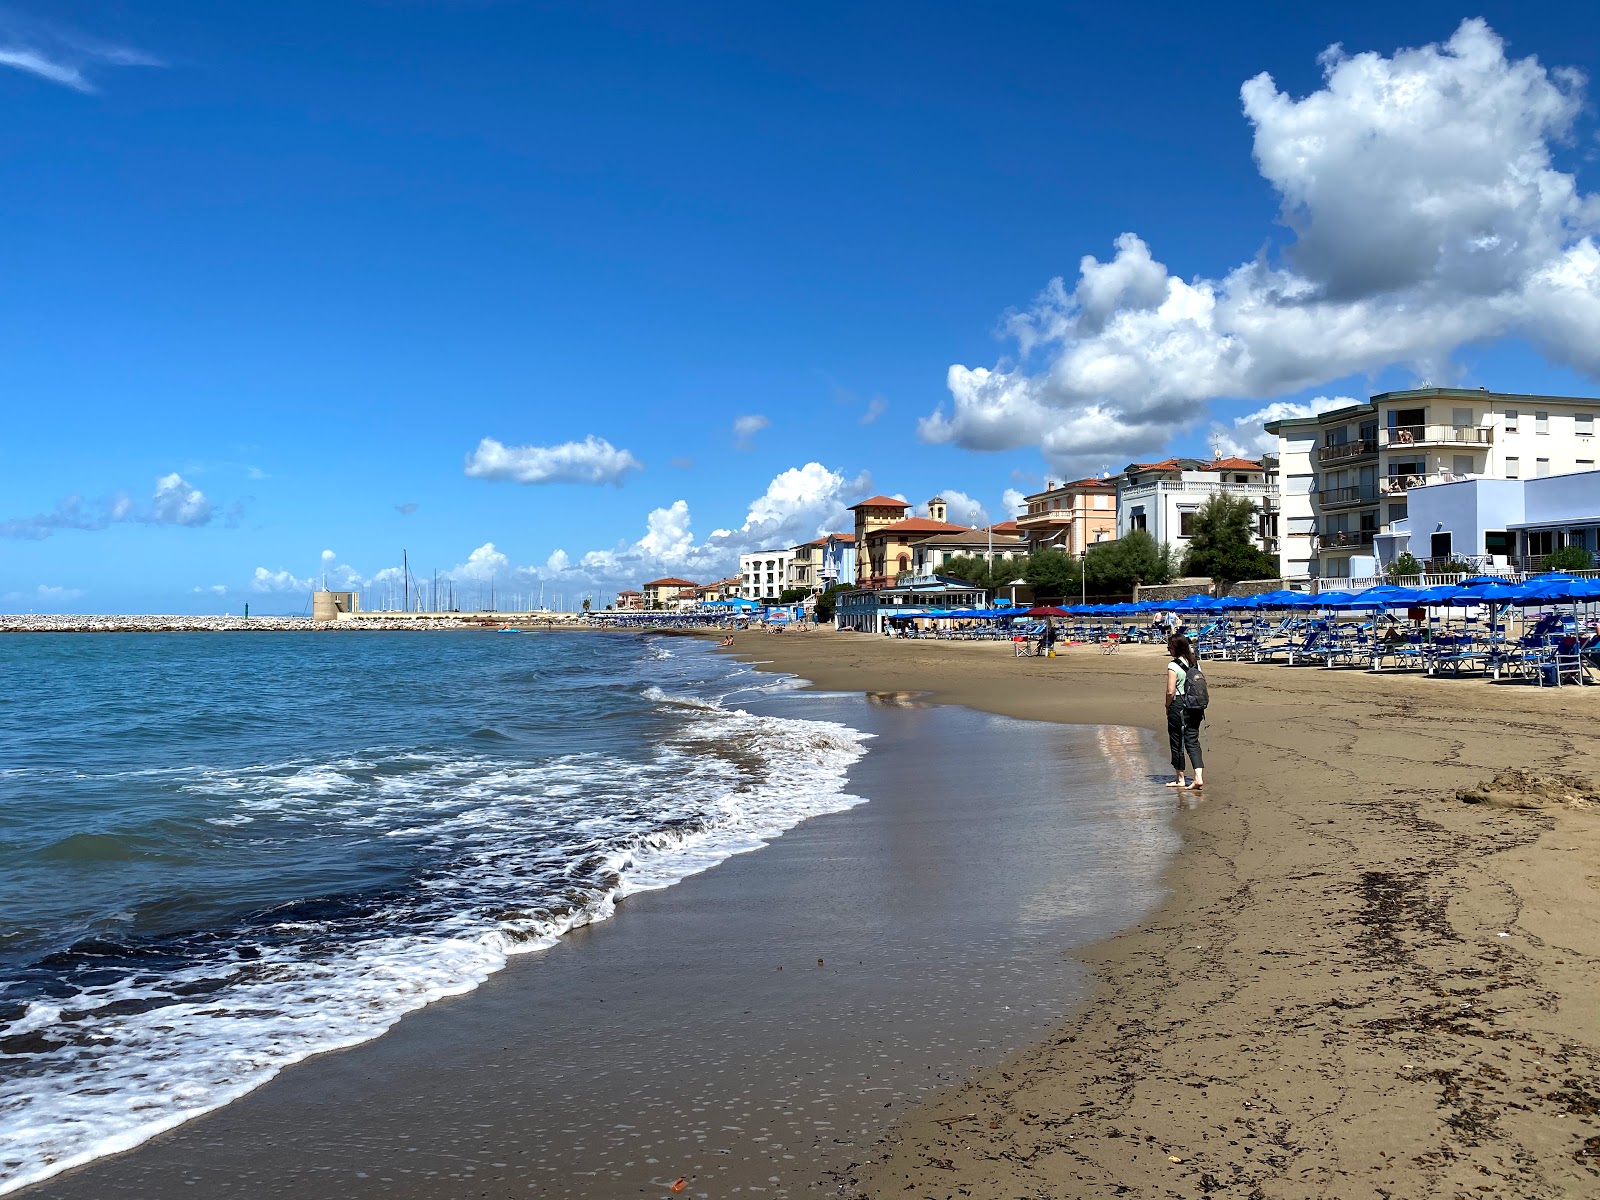 Fotografie cu Spiaggia Libera San Vincenzo cu o suprafață de nisip maro